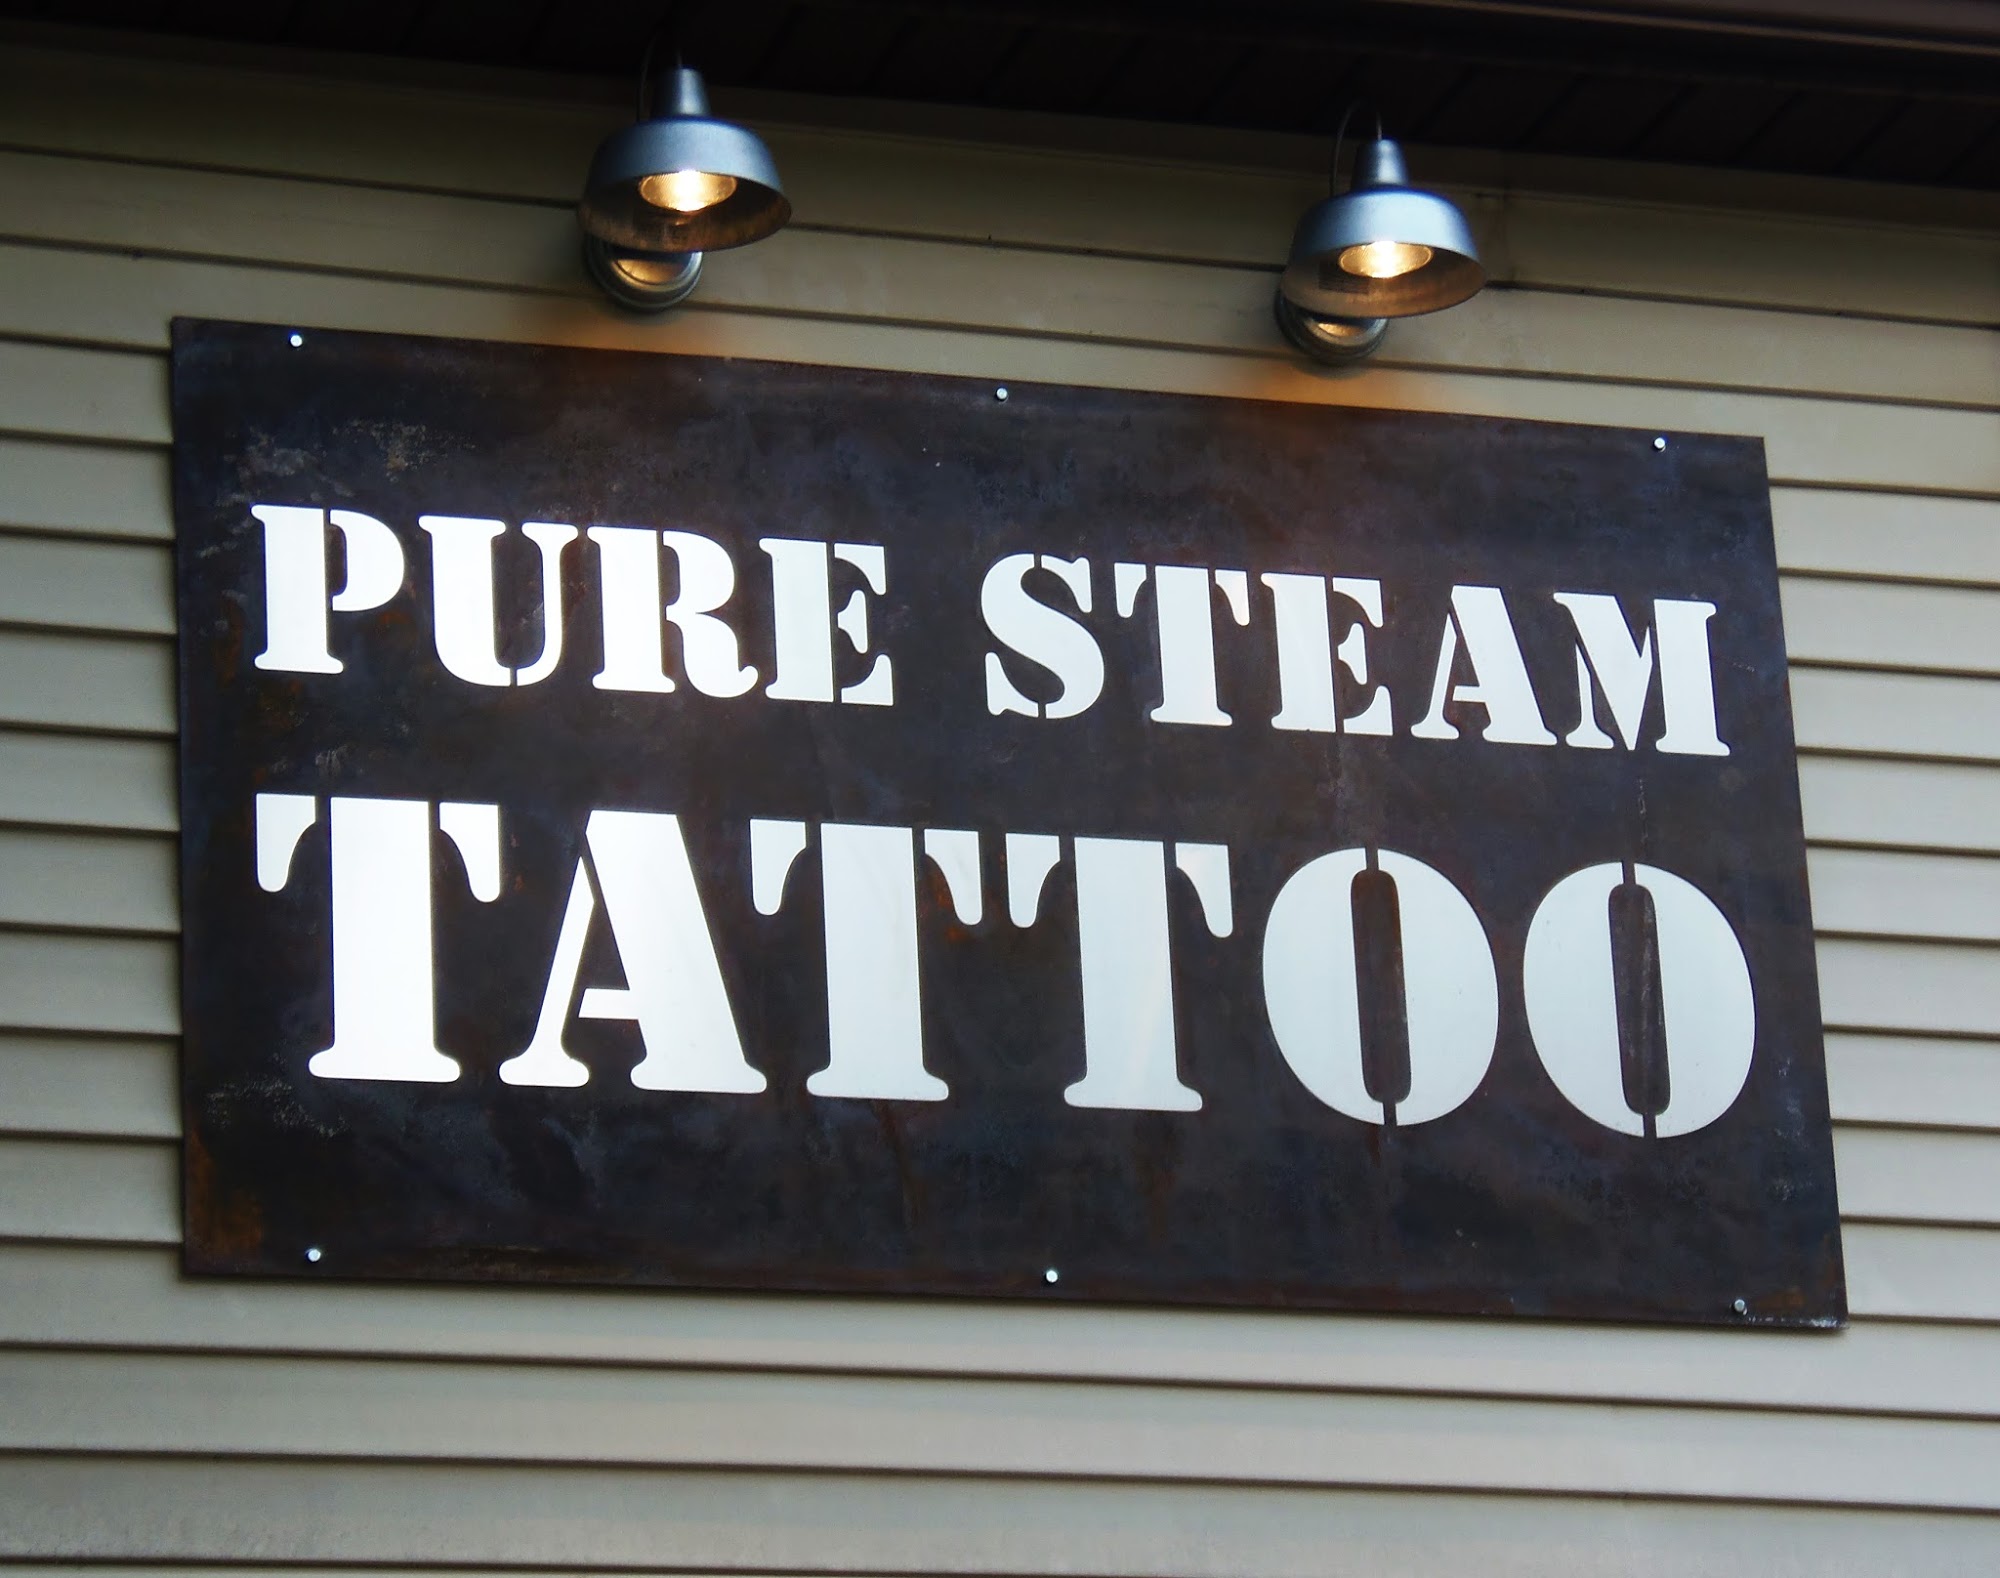 Pure Steam Tattoo